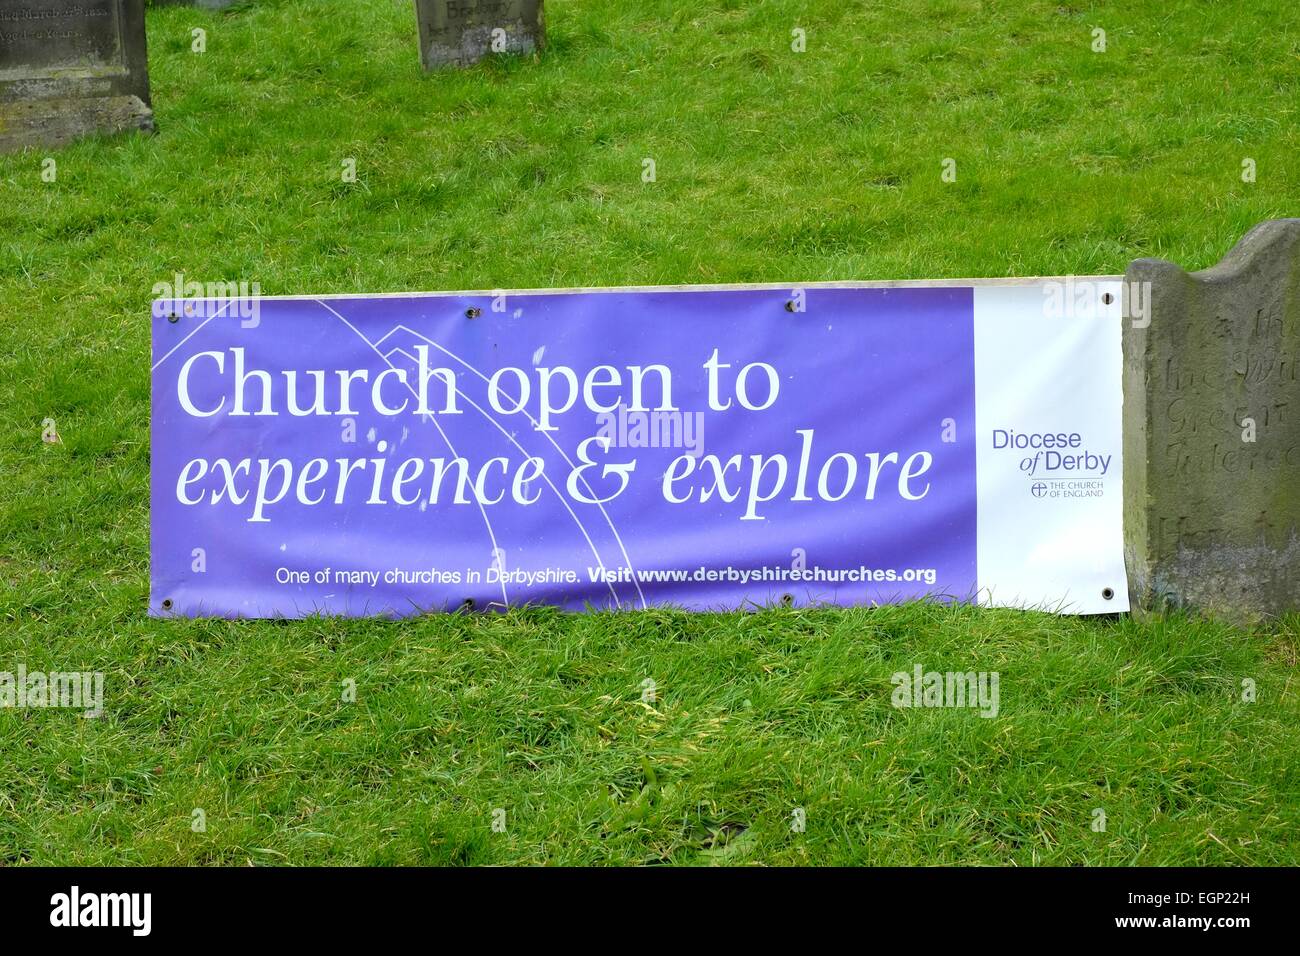 Diözese von Derby-Banner-Werbung, dass die Kirche offen zu erleben und zu entdecken Stockfoto